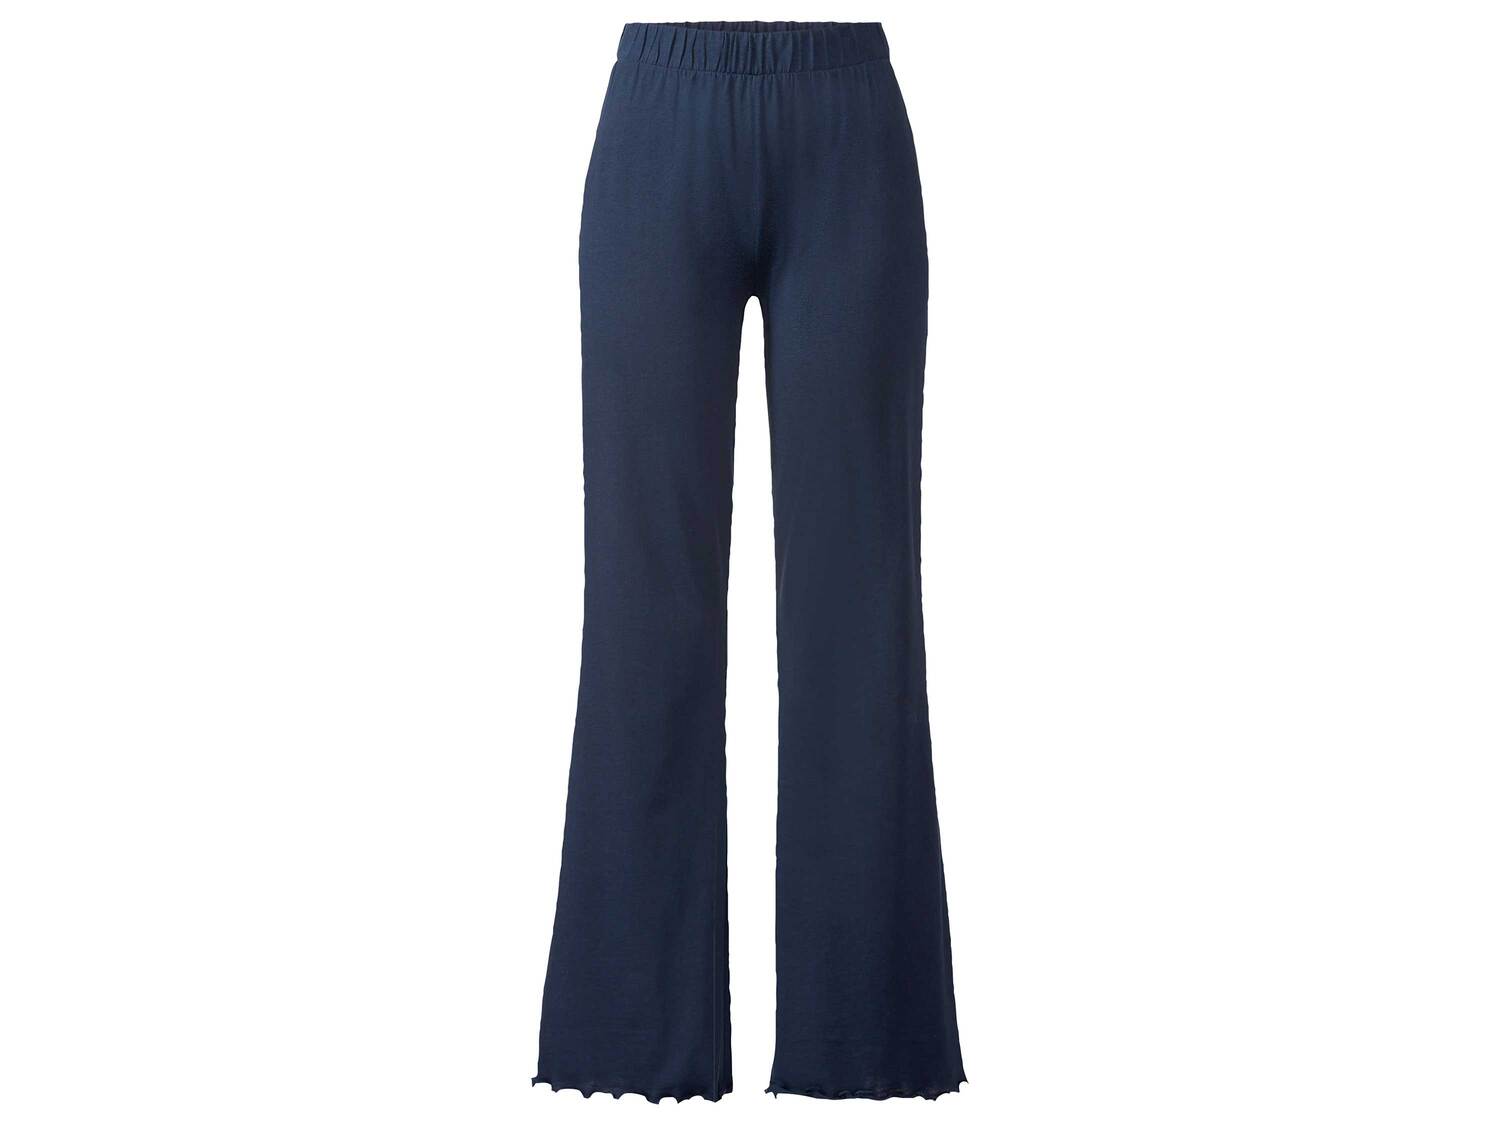 Pyjama , le prix 12.99 € 
- Du S au XL selon modèle.
- Ex. 100 % coton 
- ...